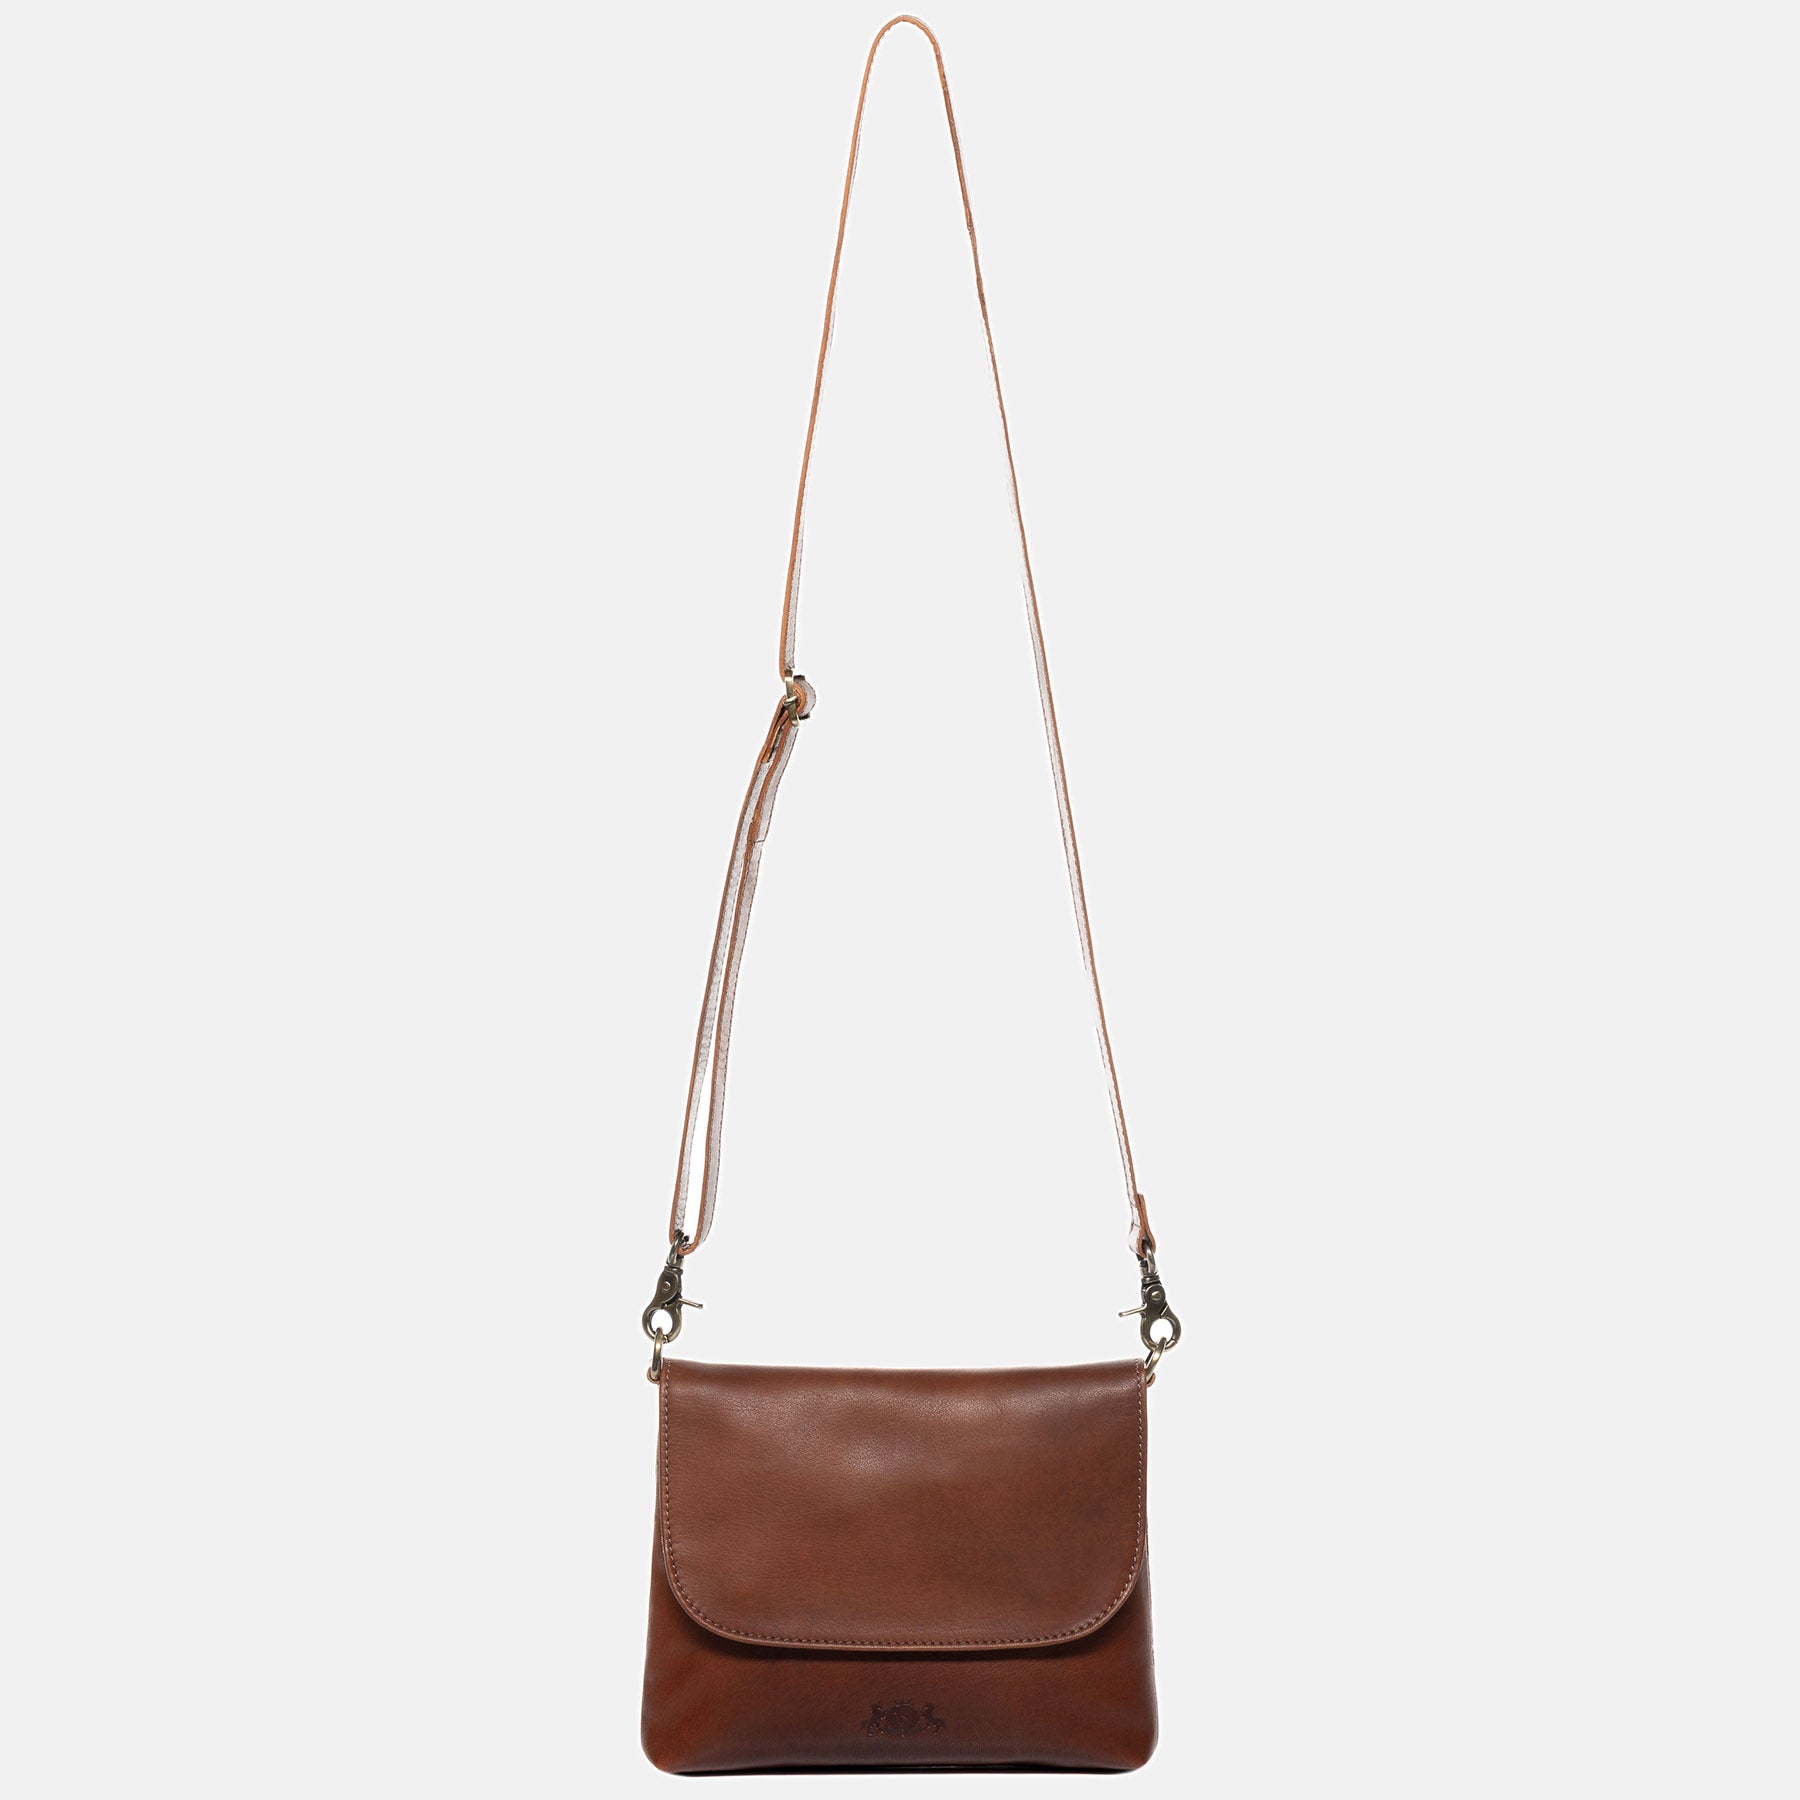 Shoulder bag LINA smooth leather light brown